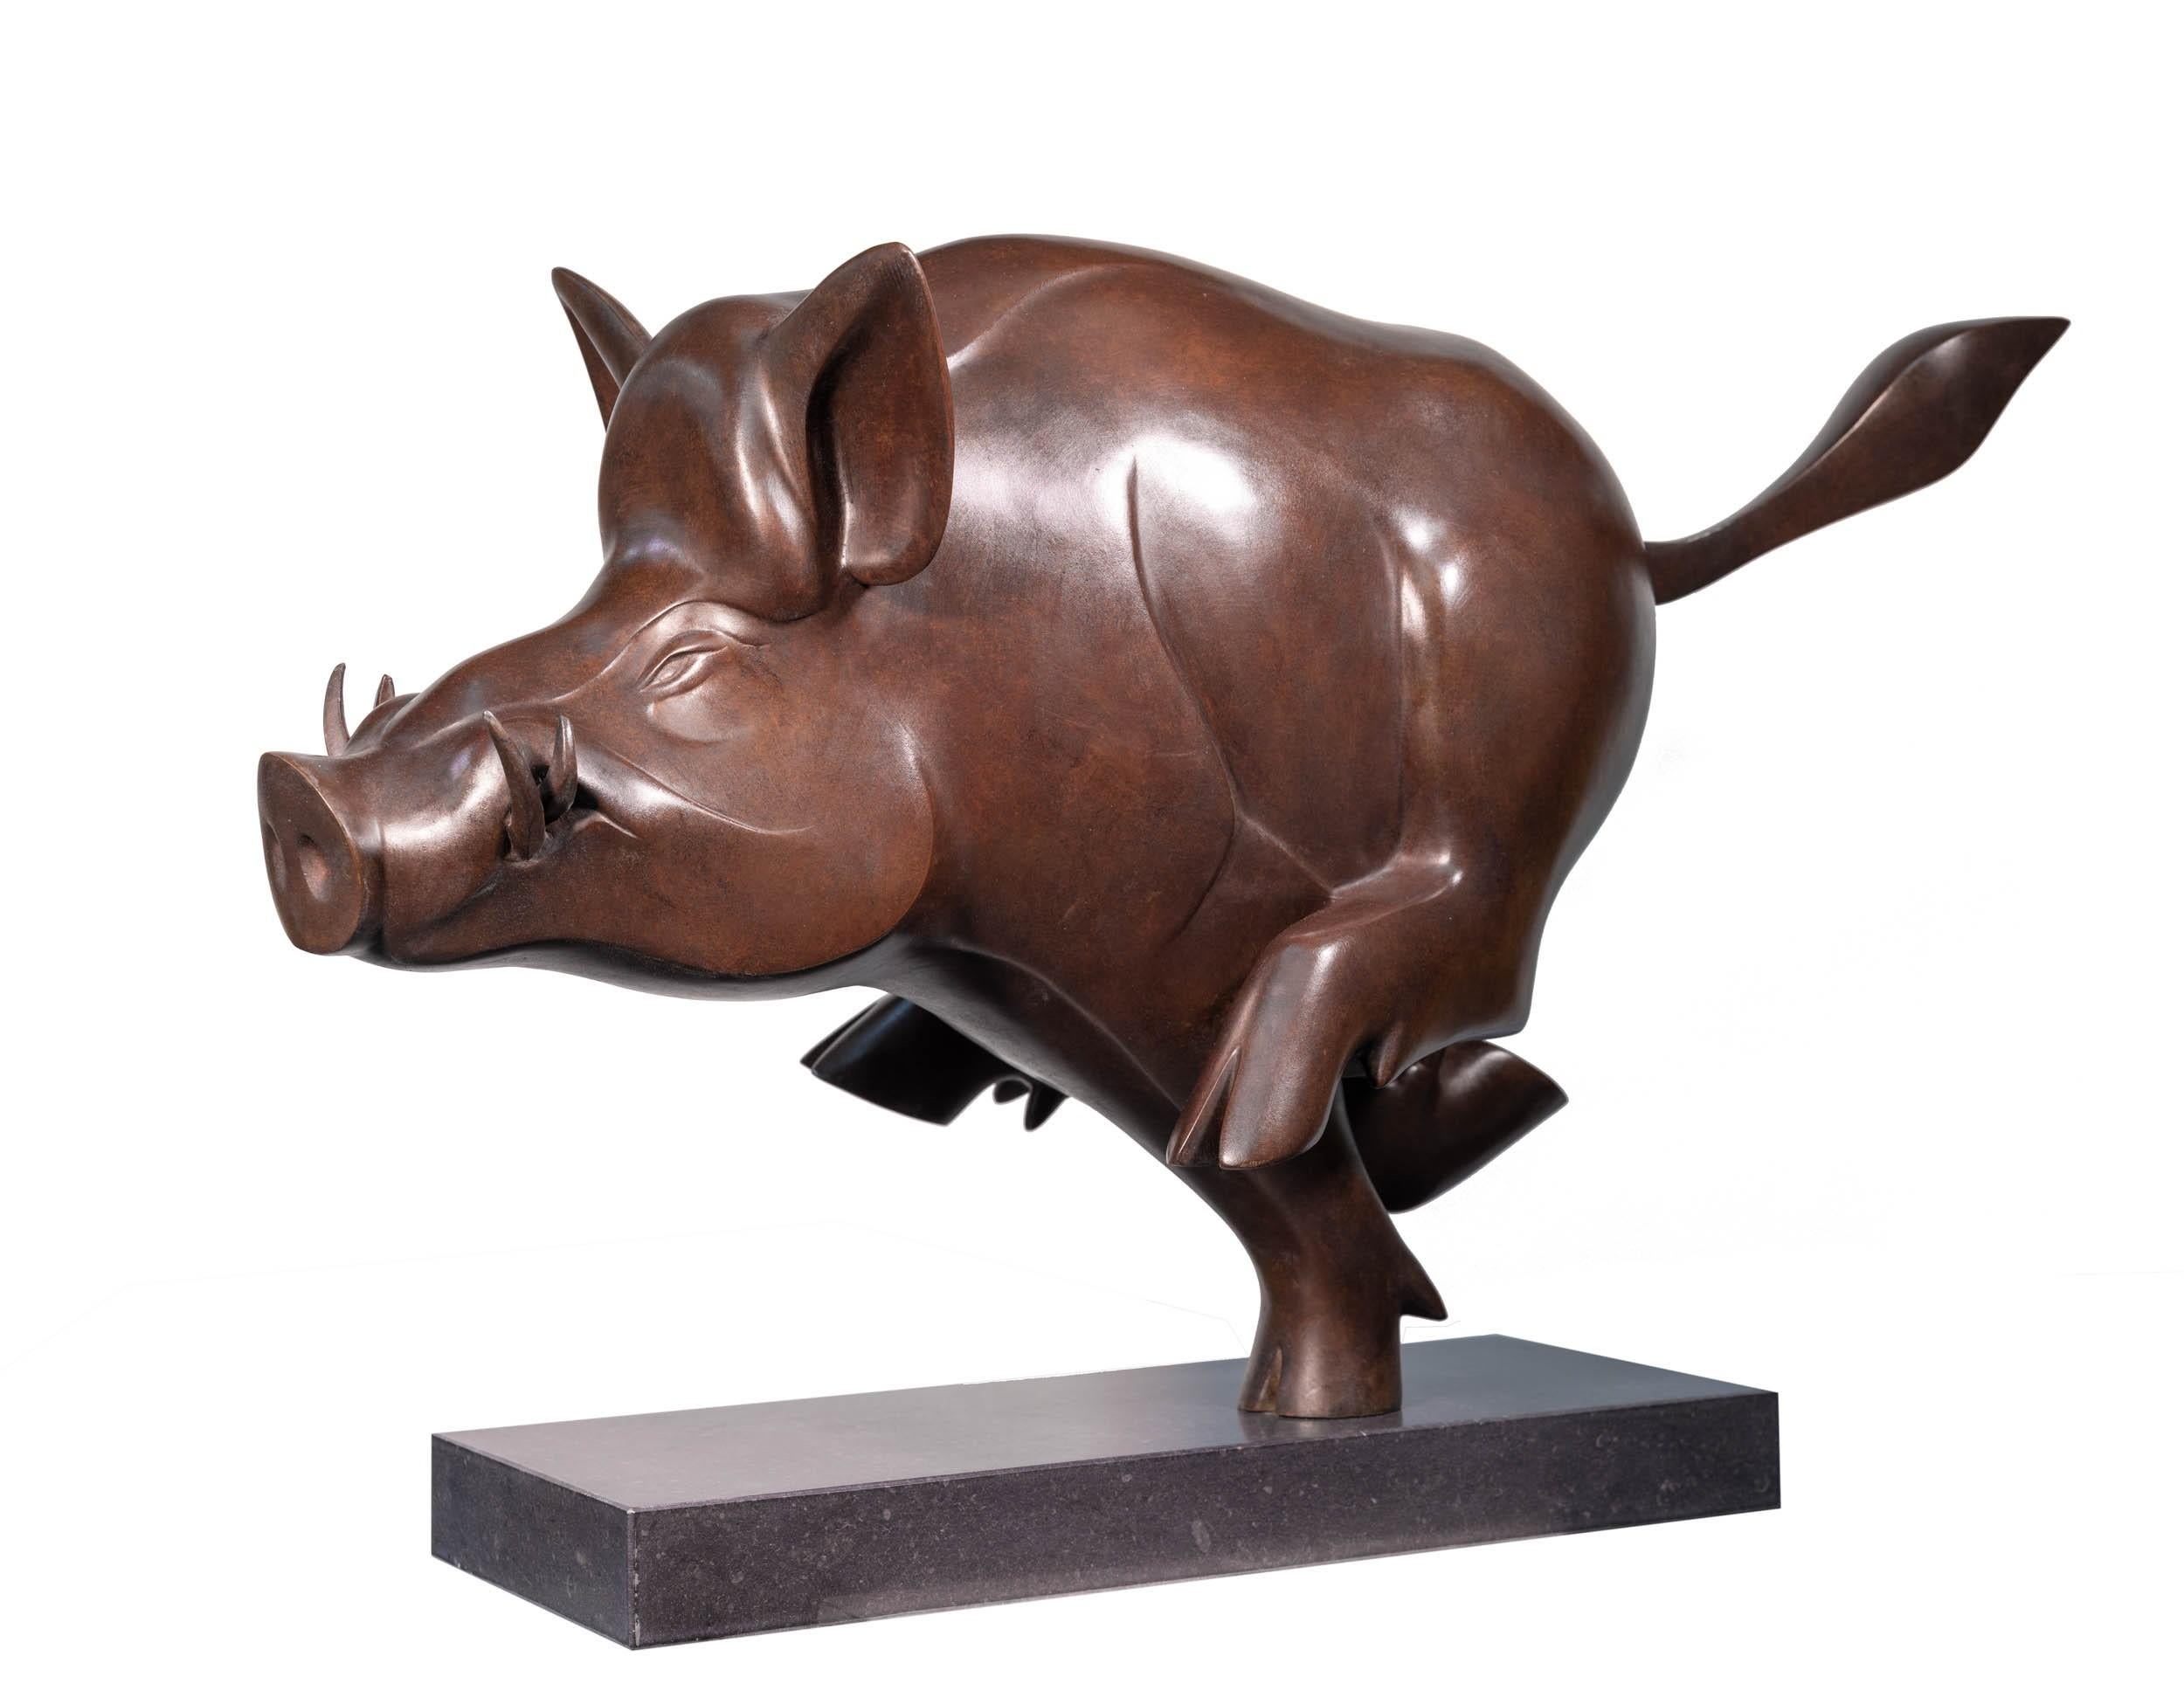 Evert den Hartog Figurative Sculpture - Everzwijn no. 2 Wild Boar Big Brown Bronze Sculpture Wildlife Animal In Stock 